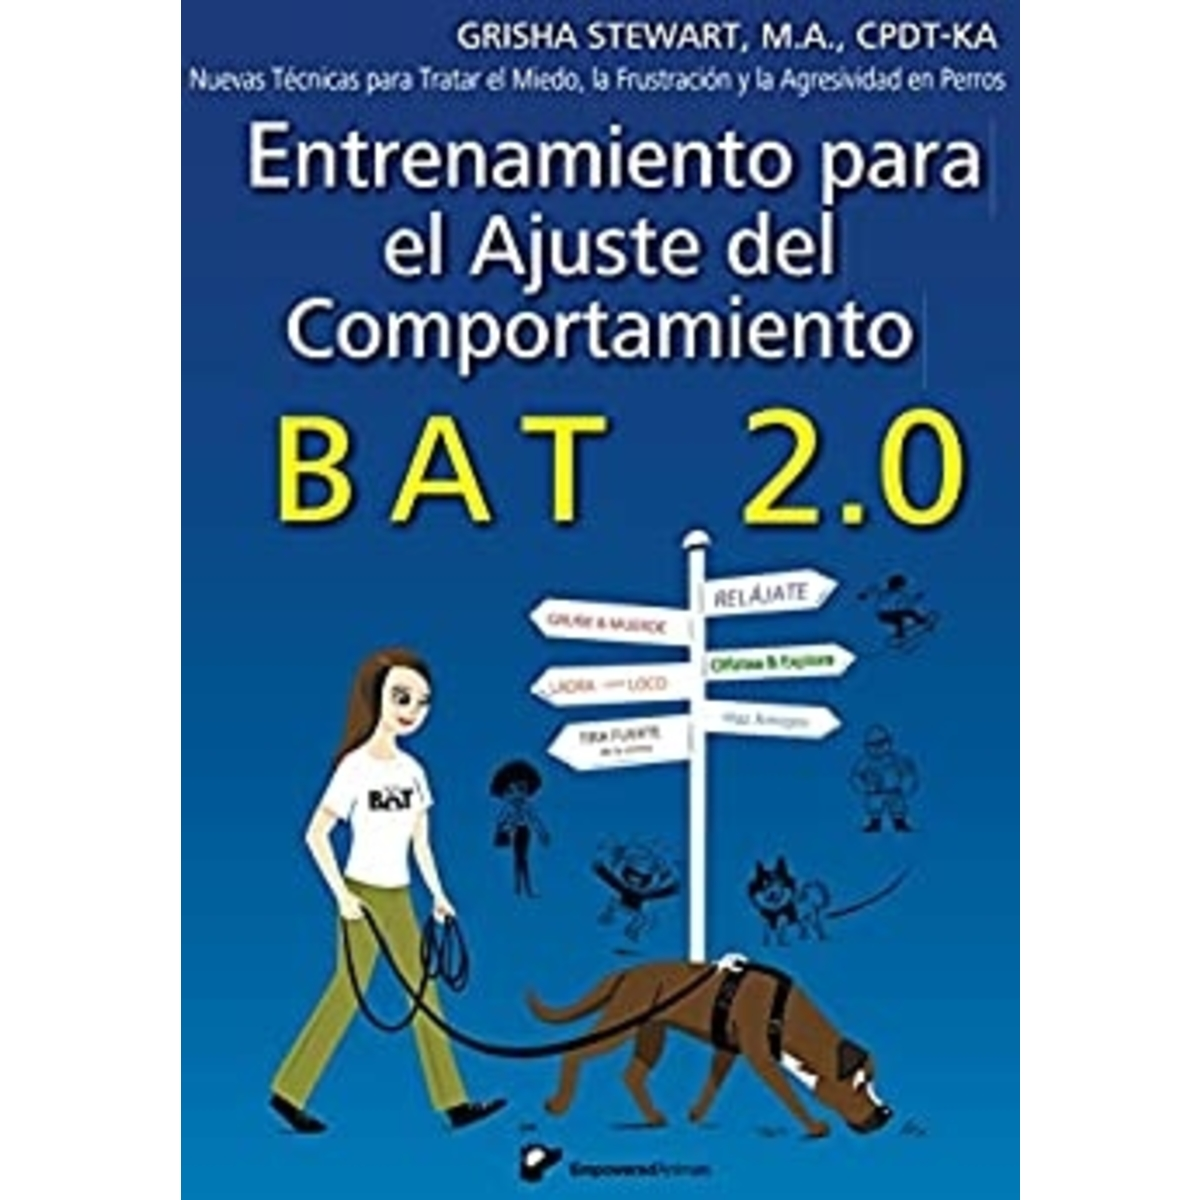 BAT 2.0 Spainsh- -Entrenamiento para el Ajuste del Comportamiento BAT 2.0: Nuevas Técnicas para Tratar el Miedo, la Frustración y la Agresividad en Perros (Spanish Edition)